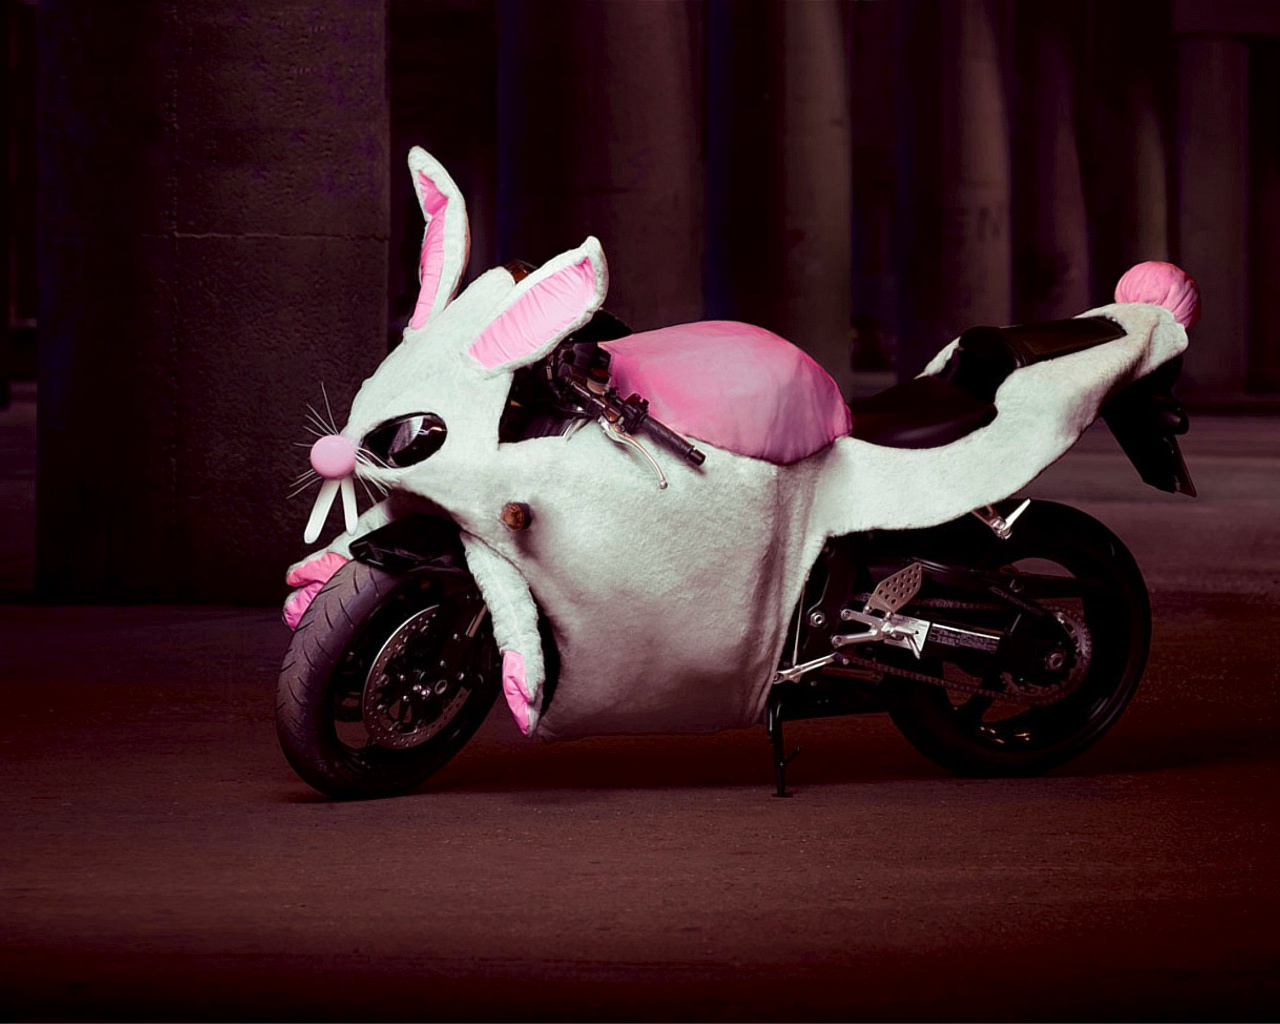 3d обои Мотоцикл в виде розового кролика  гламурные # 23835